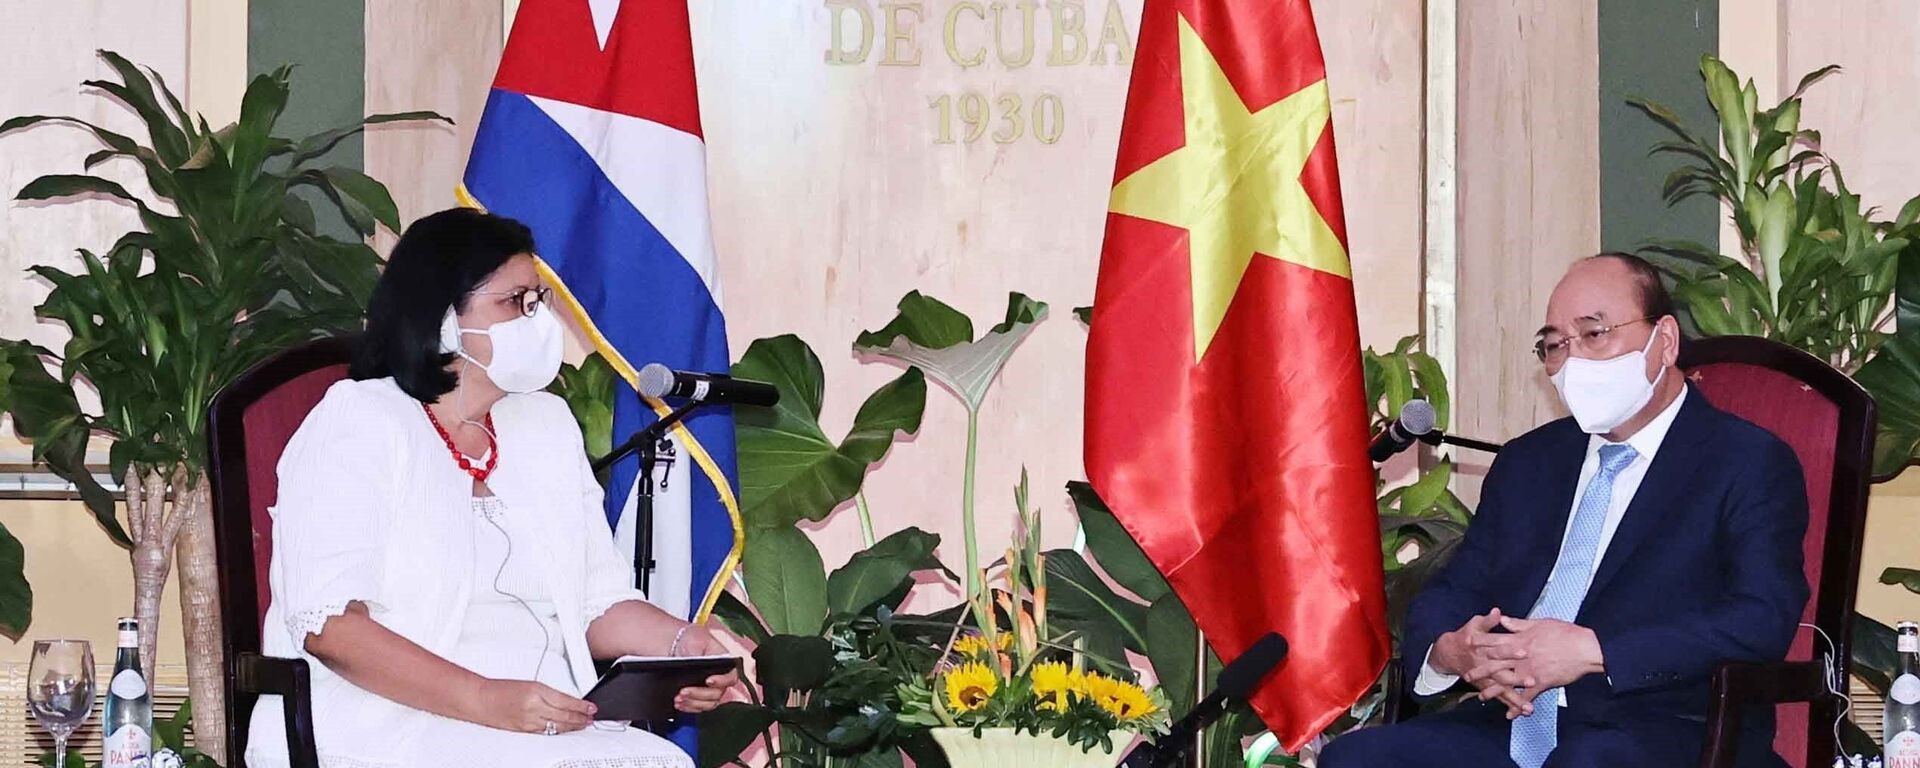 Chủ tịch nước Nguyễn Xuân Phúc tiếp Phó Chủ tịch thứ nhất Viện Cuba hữu nghị với các dân tộc (ICAP) Noemi Rabaza Fernandez - Sputnik Việt Nam, 1920, 19.09.2021